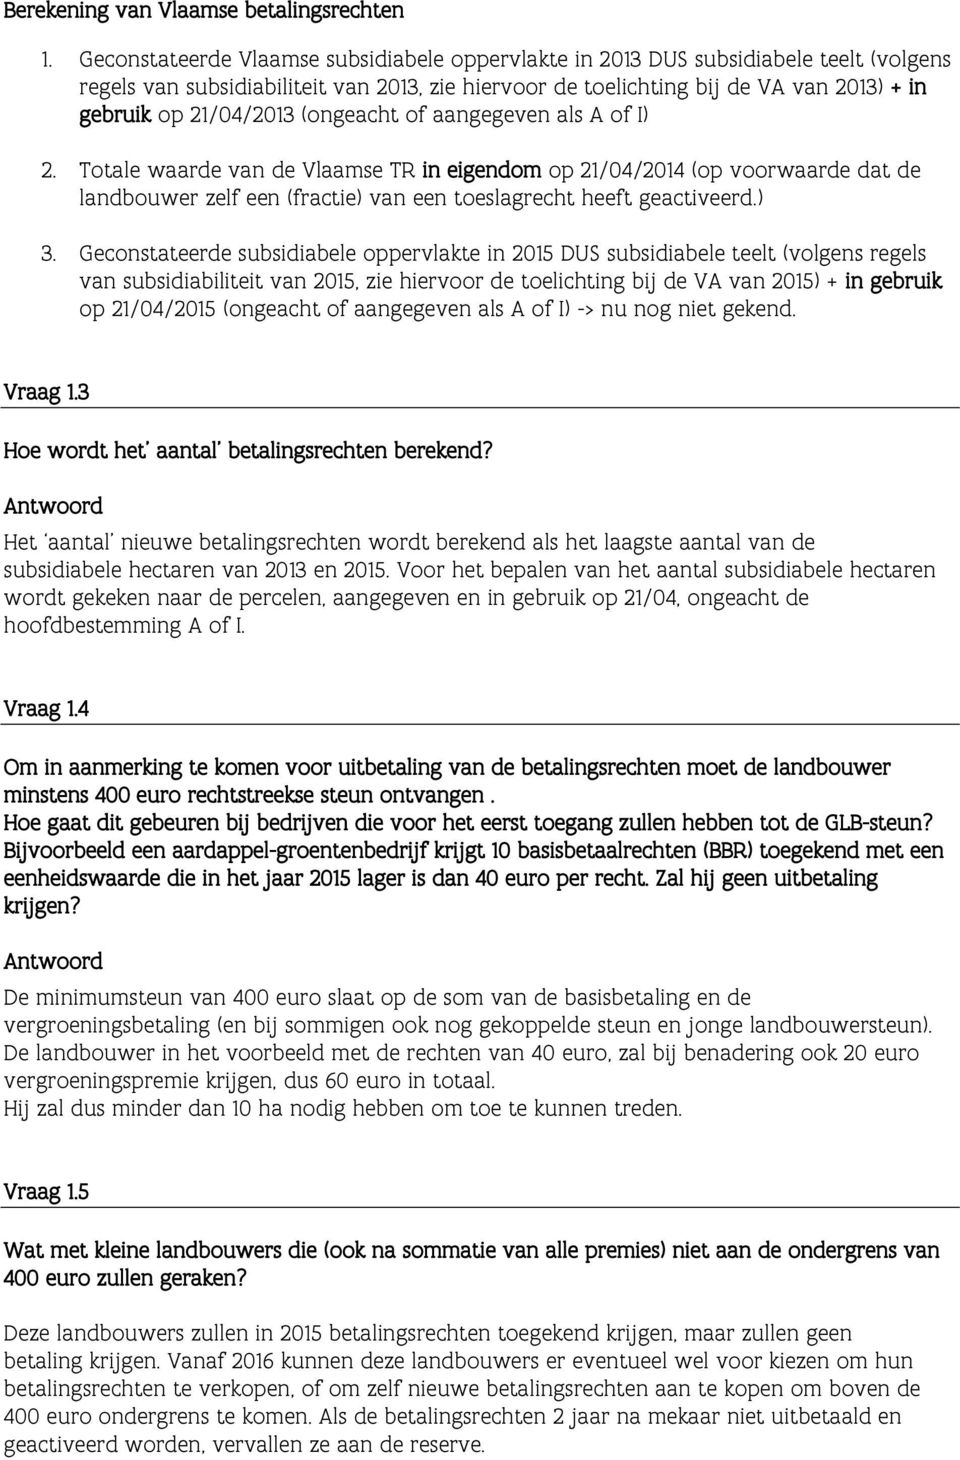 21/04/2013 (ongeacht of aangegeven als A of I) 2. Totale waarde van de Vlaamse TR in eigendom op 21/04/2014 (op voorwaarde dat de landbouwer zelf een (fractie) van een toeslagrecht heeft geactiveerd.